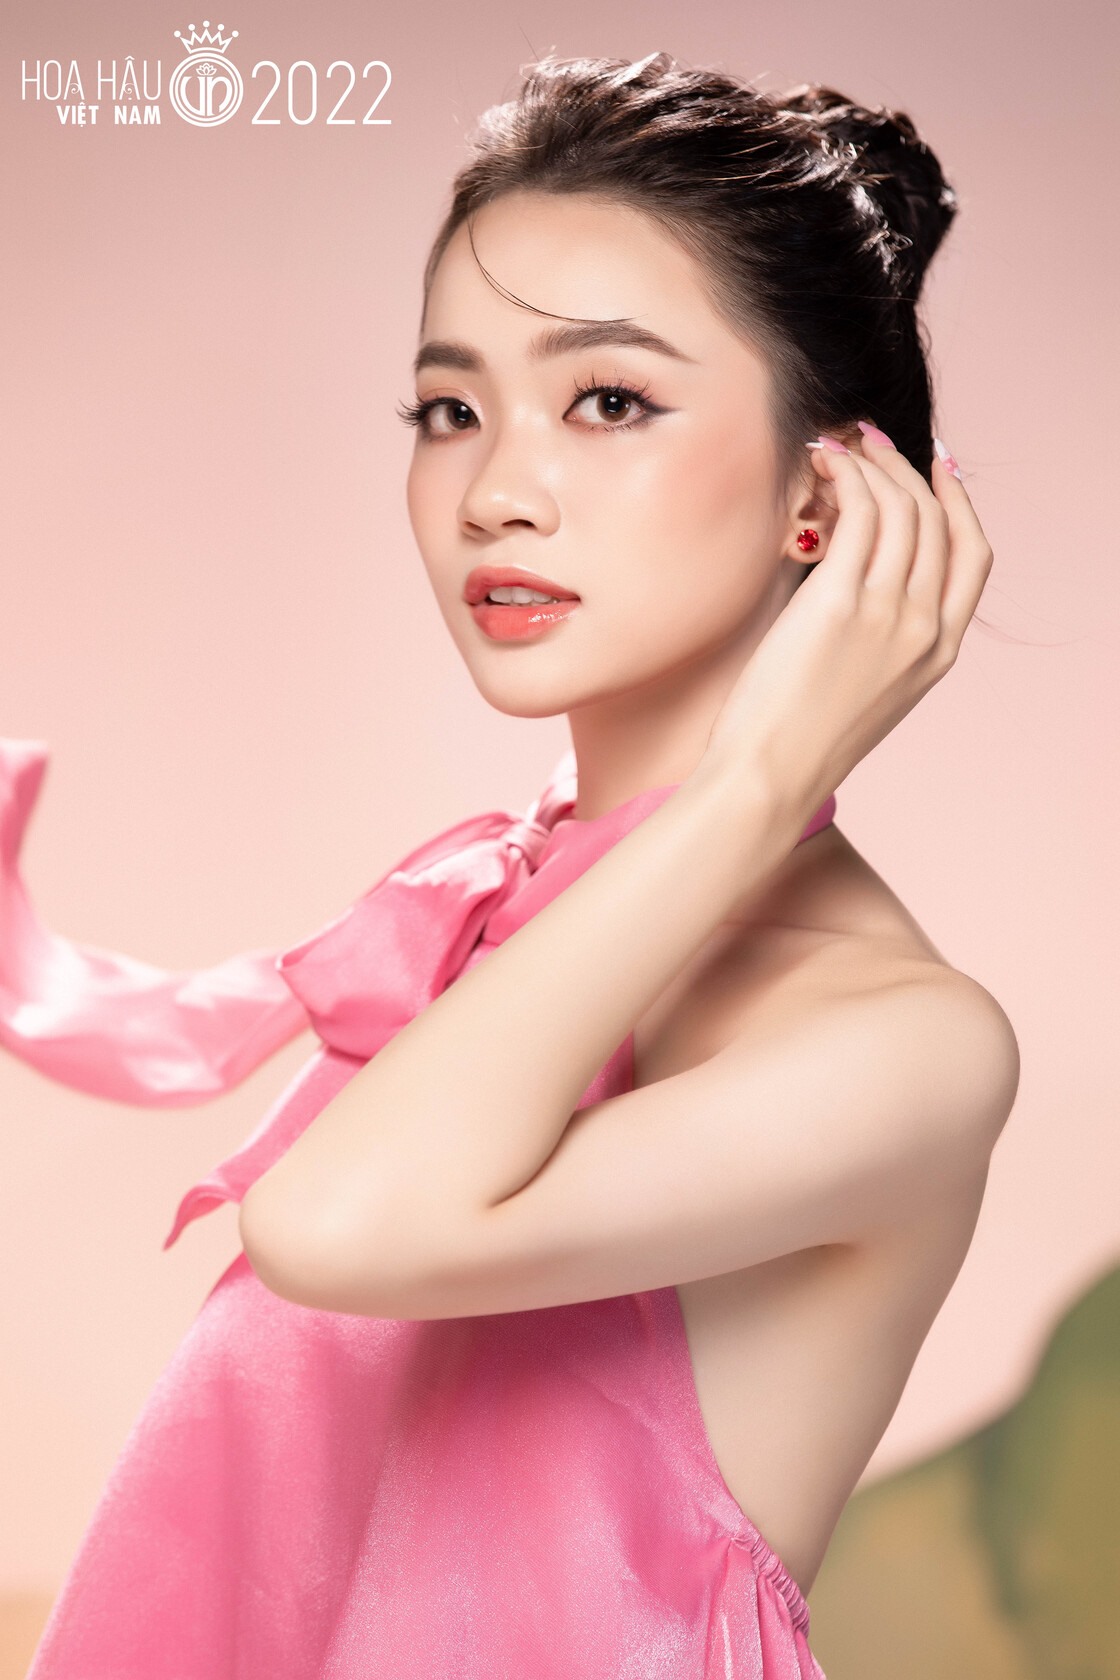 Bùi Thảo Linh cũng là thí sinh nhỏ tuổi nhất tại Hoa hậu Việt Nam 2022. Ảnh: Lê Thiện Viễn.